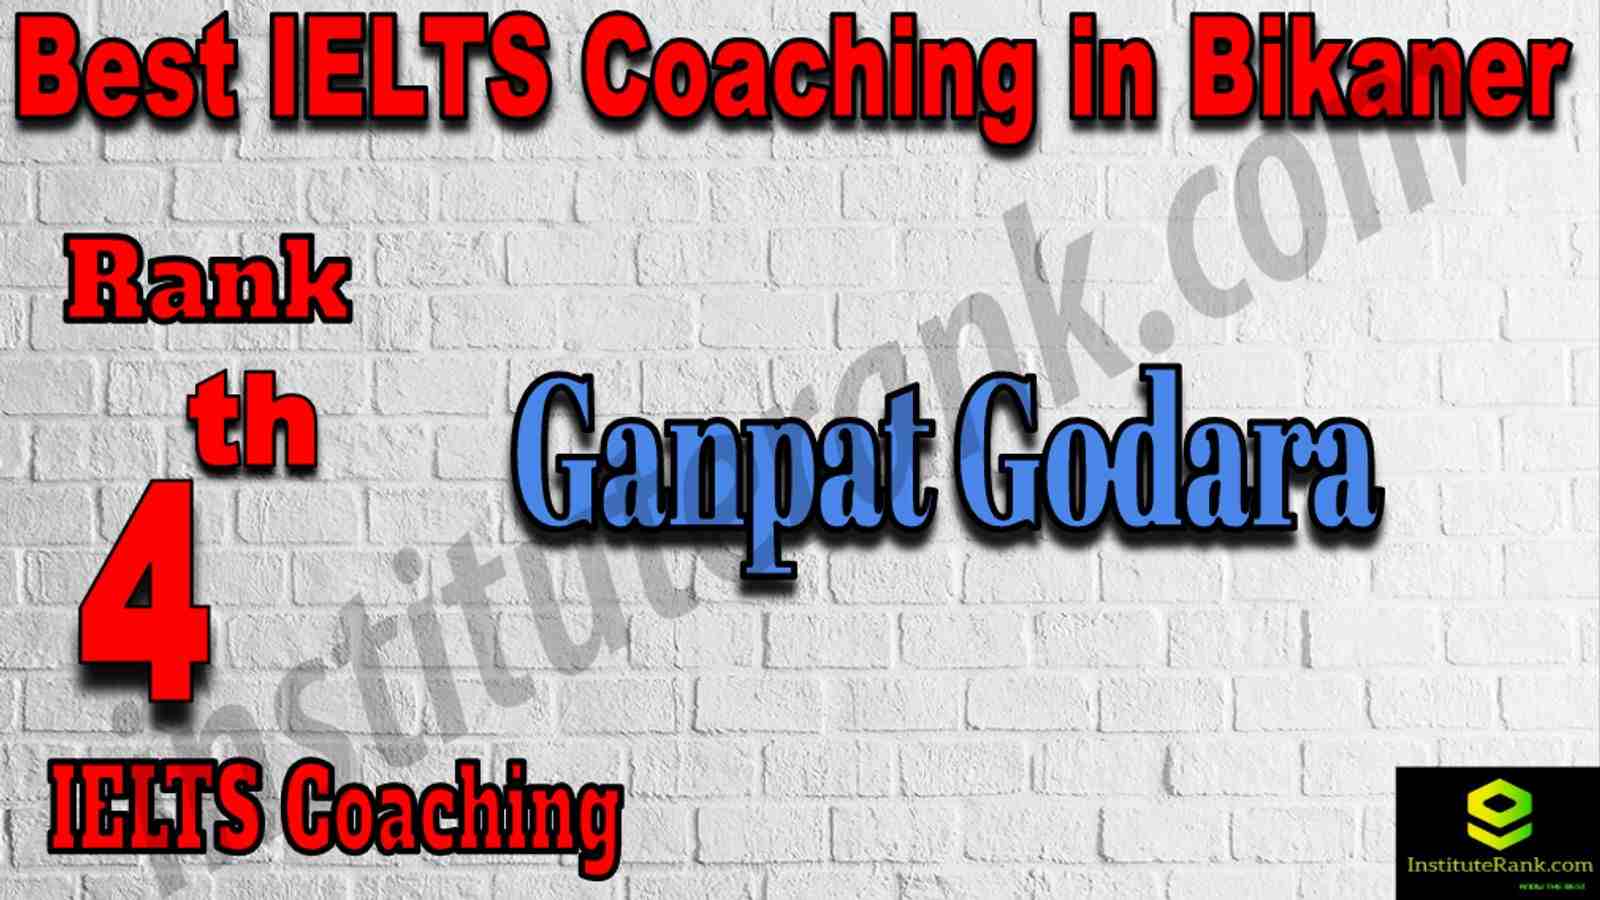 4th Best IELTS Coaching in Bikaner